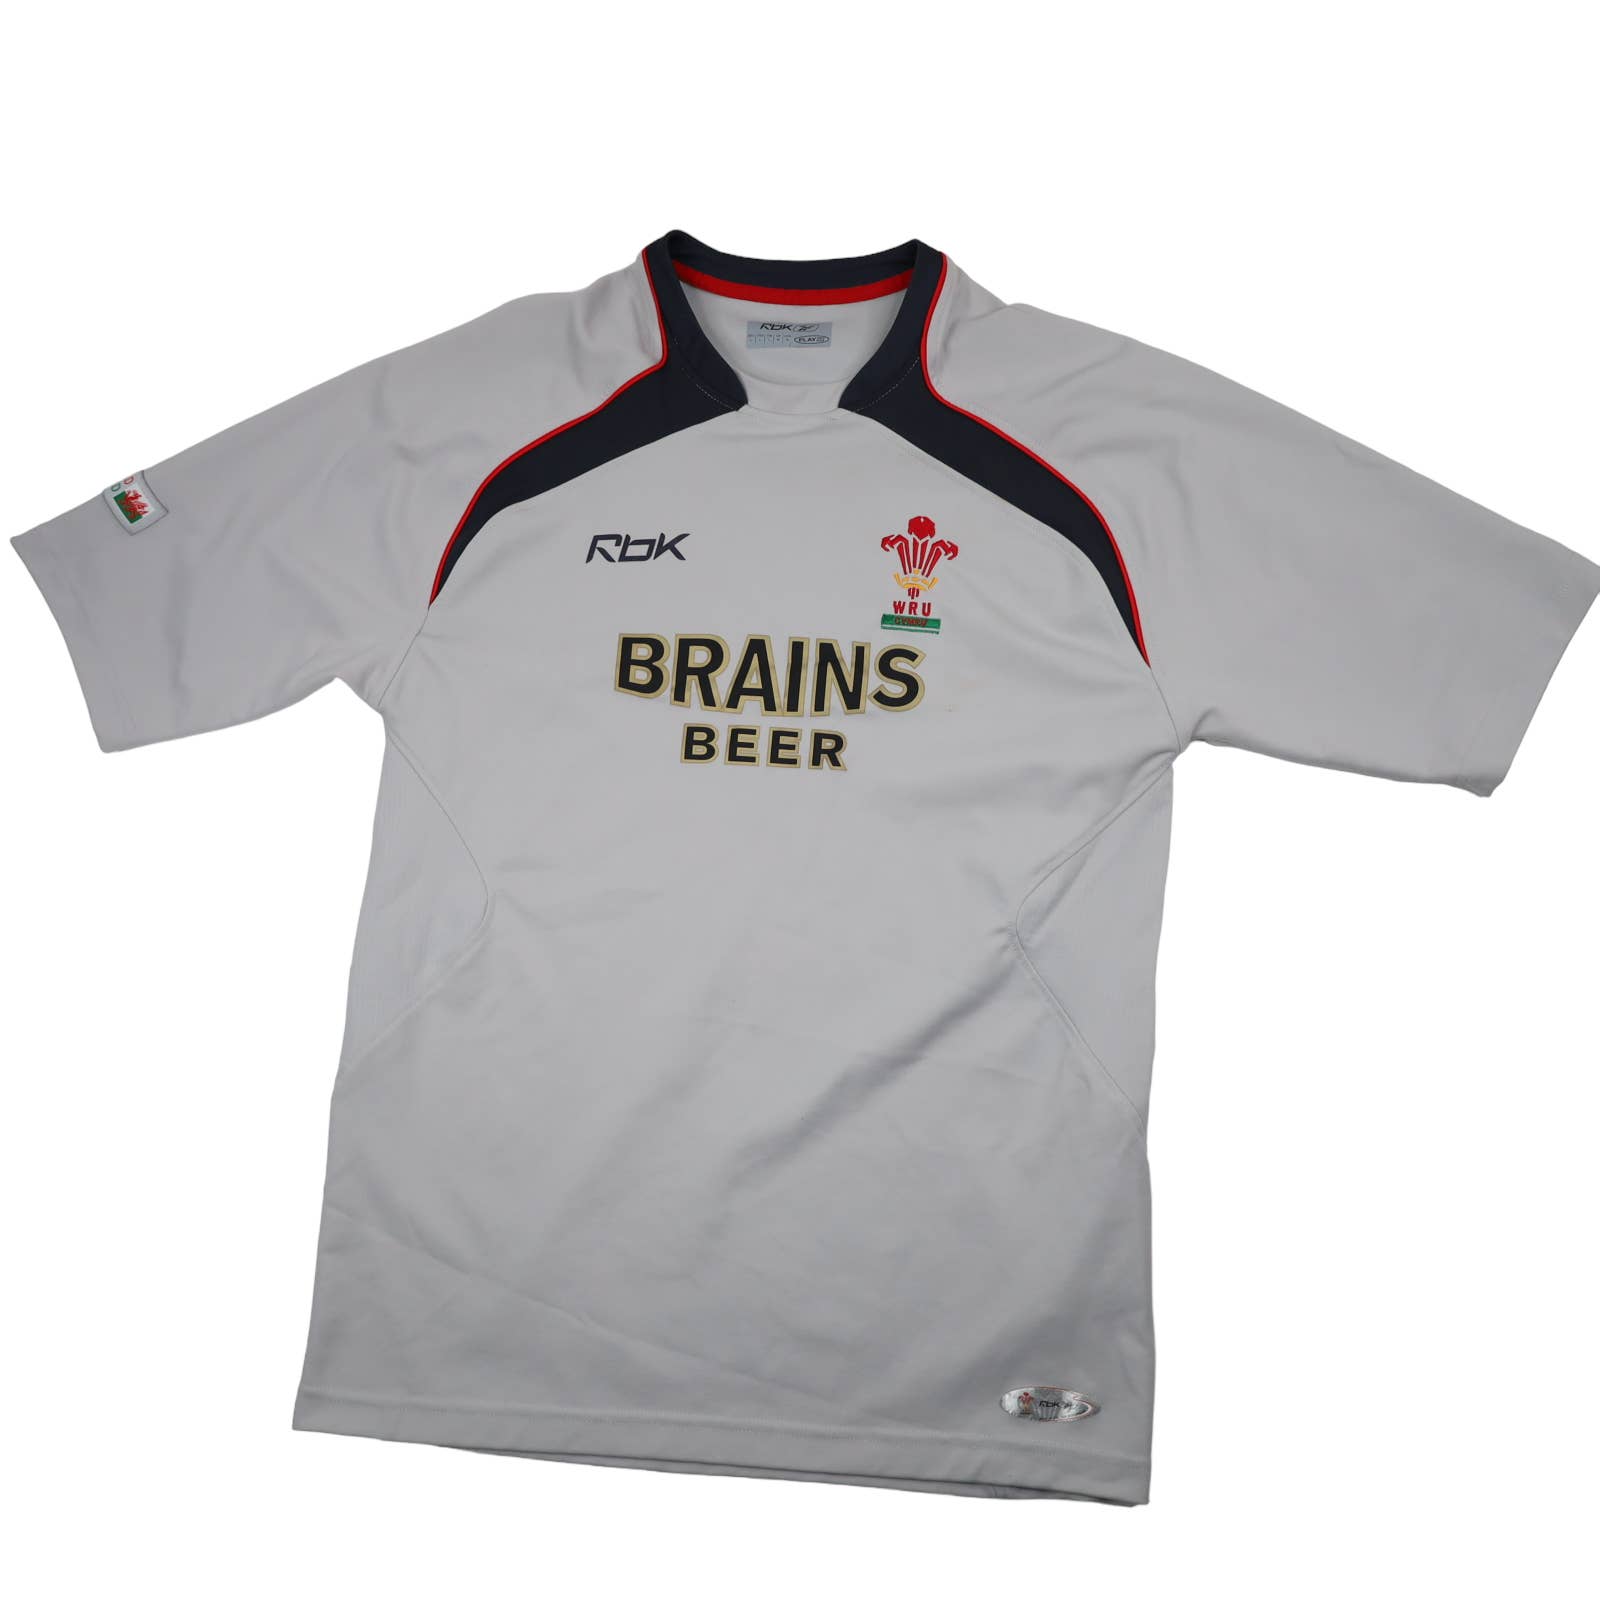 Reebok WRU Wales Rugby Brains Beer Jersey - M – Jak of all Vintage